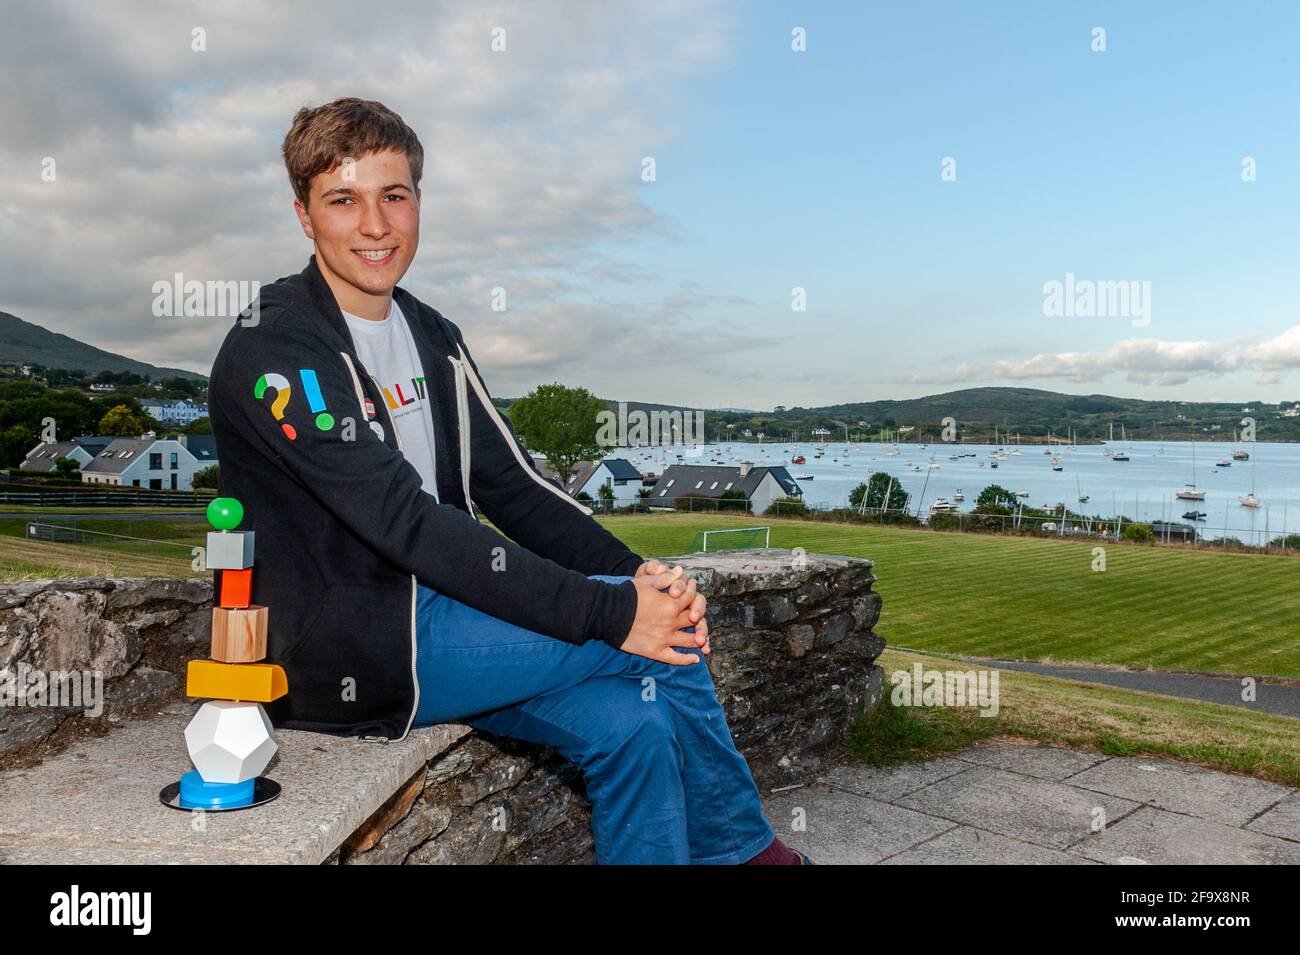 Fionn Ferreira, vainqueur de la Foire scientifique Google 2019, se détend à Schull, West Cork, Irlande. Banque D'Images